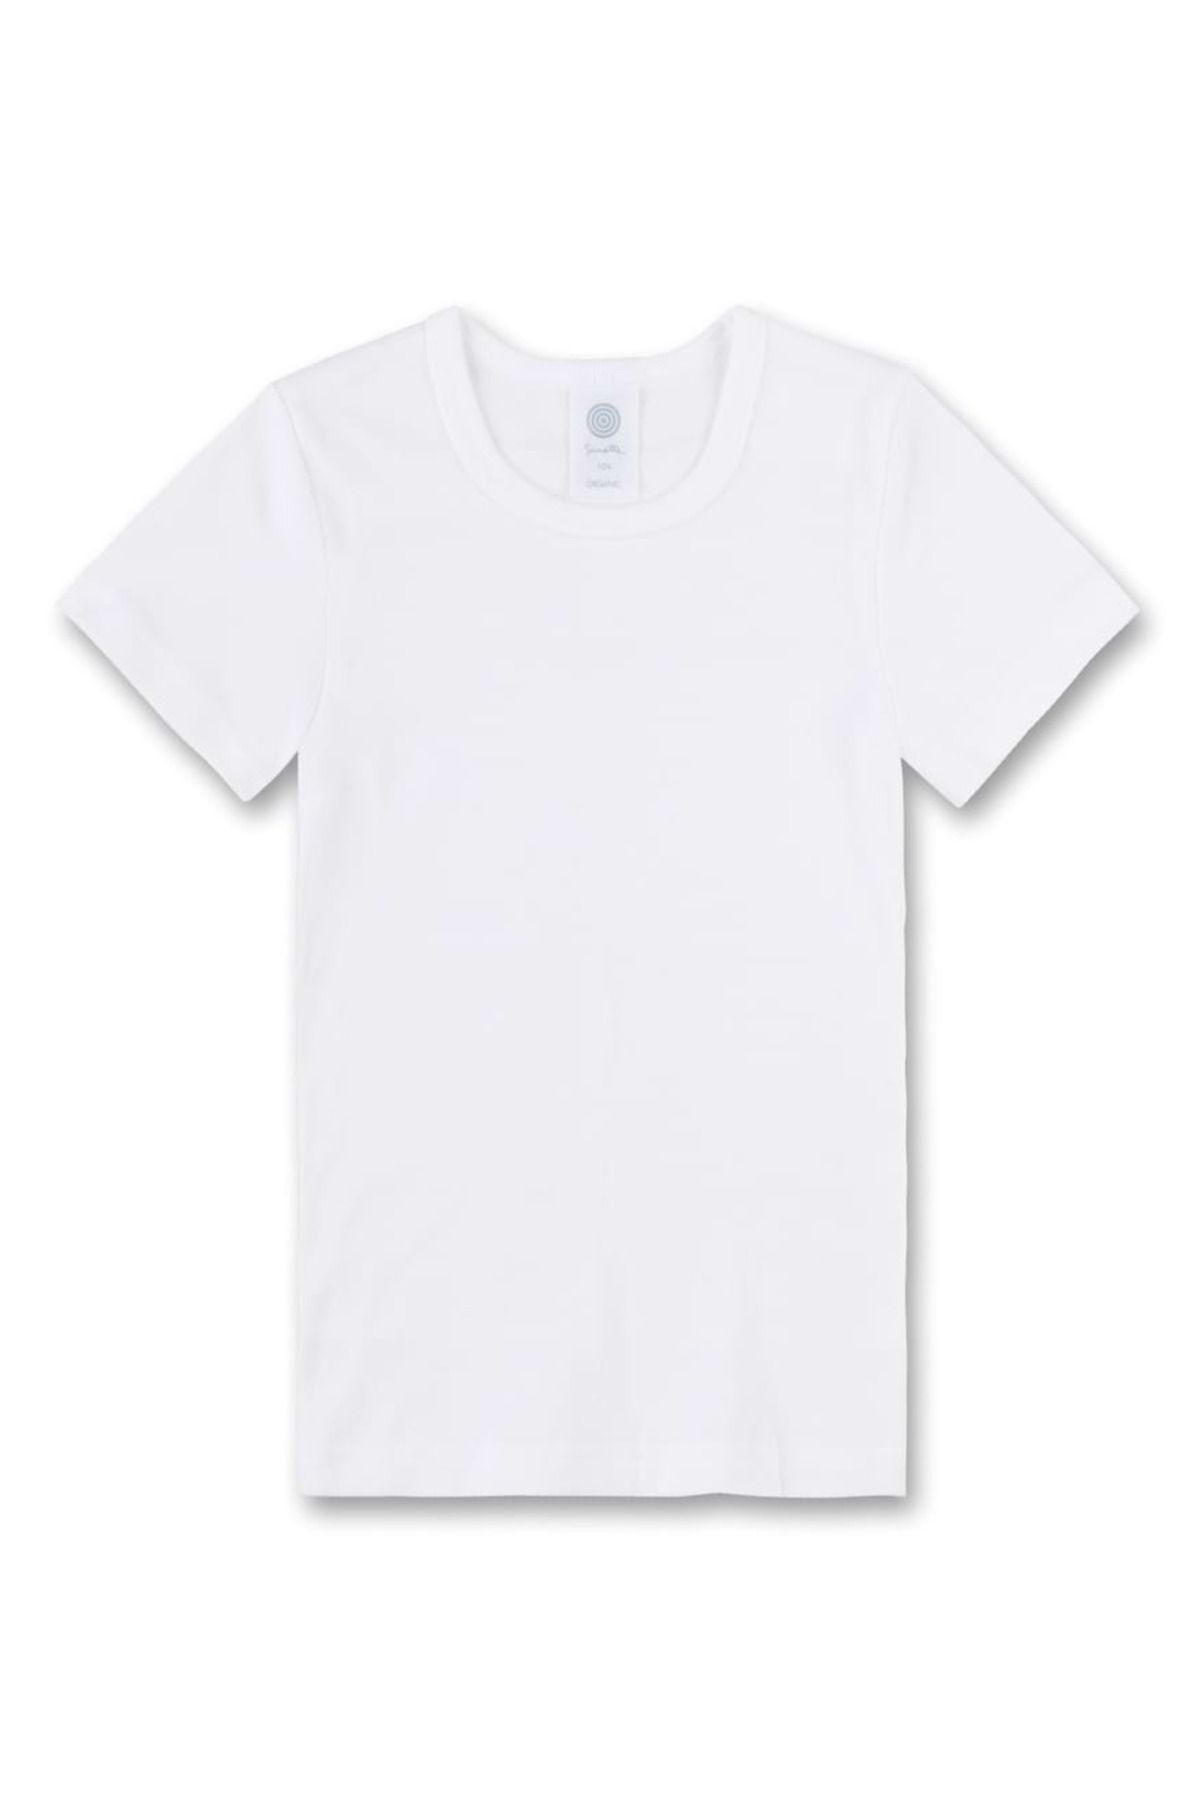 Sanetta Kinder Unterhemd - T-Shirt, Kurzarm, Baumwolle, unisex, einfarbig -  Trendyol